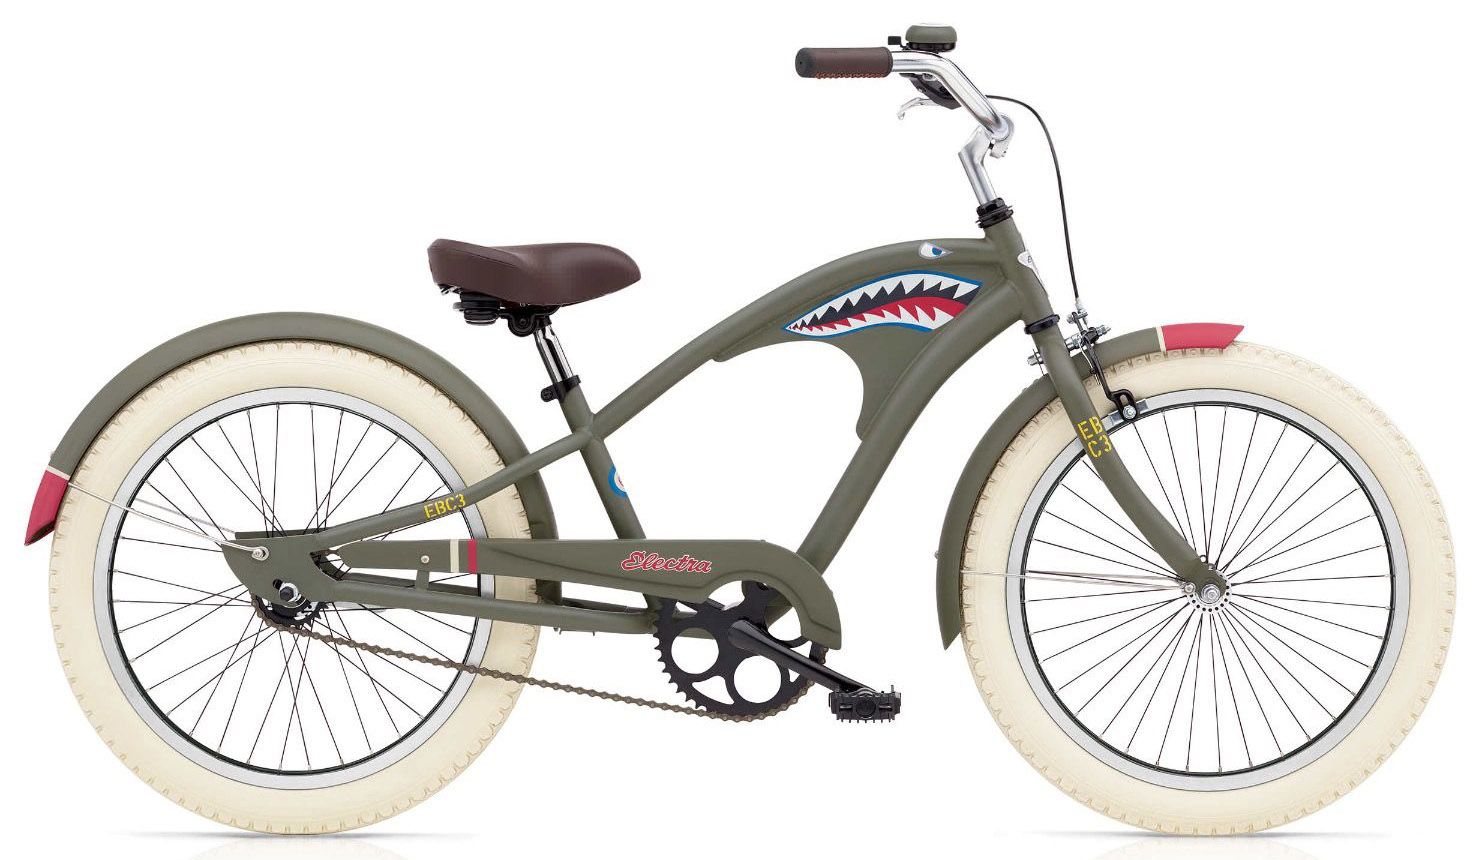  Отзывы о Детском велосипеде Electra Tiger Shark 3i 20 2020